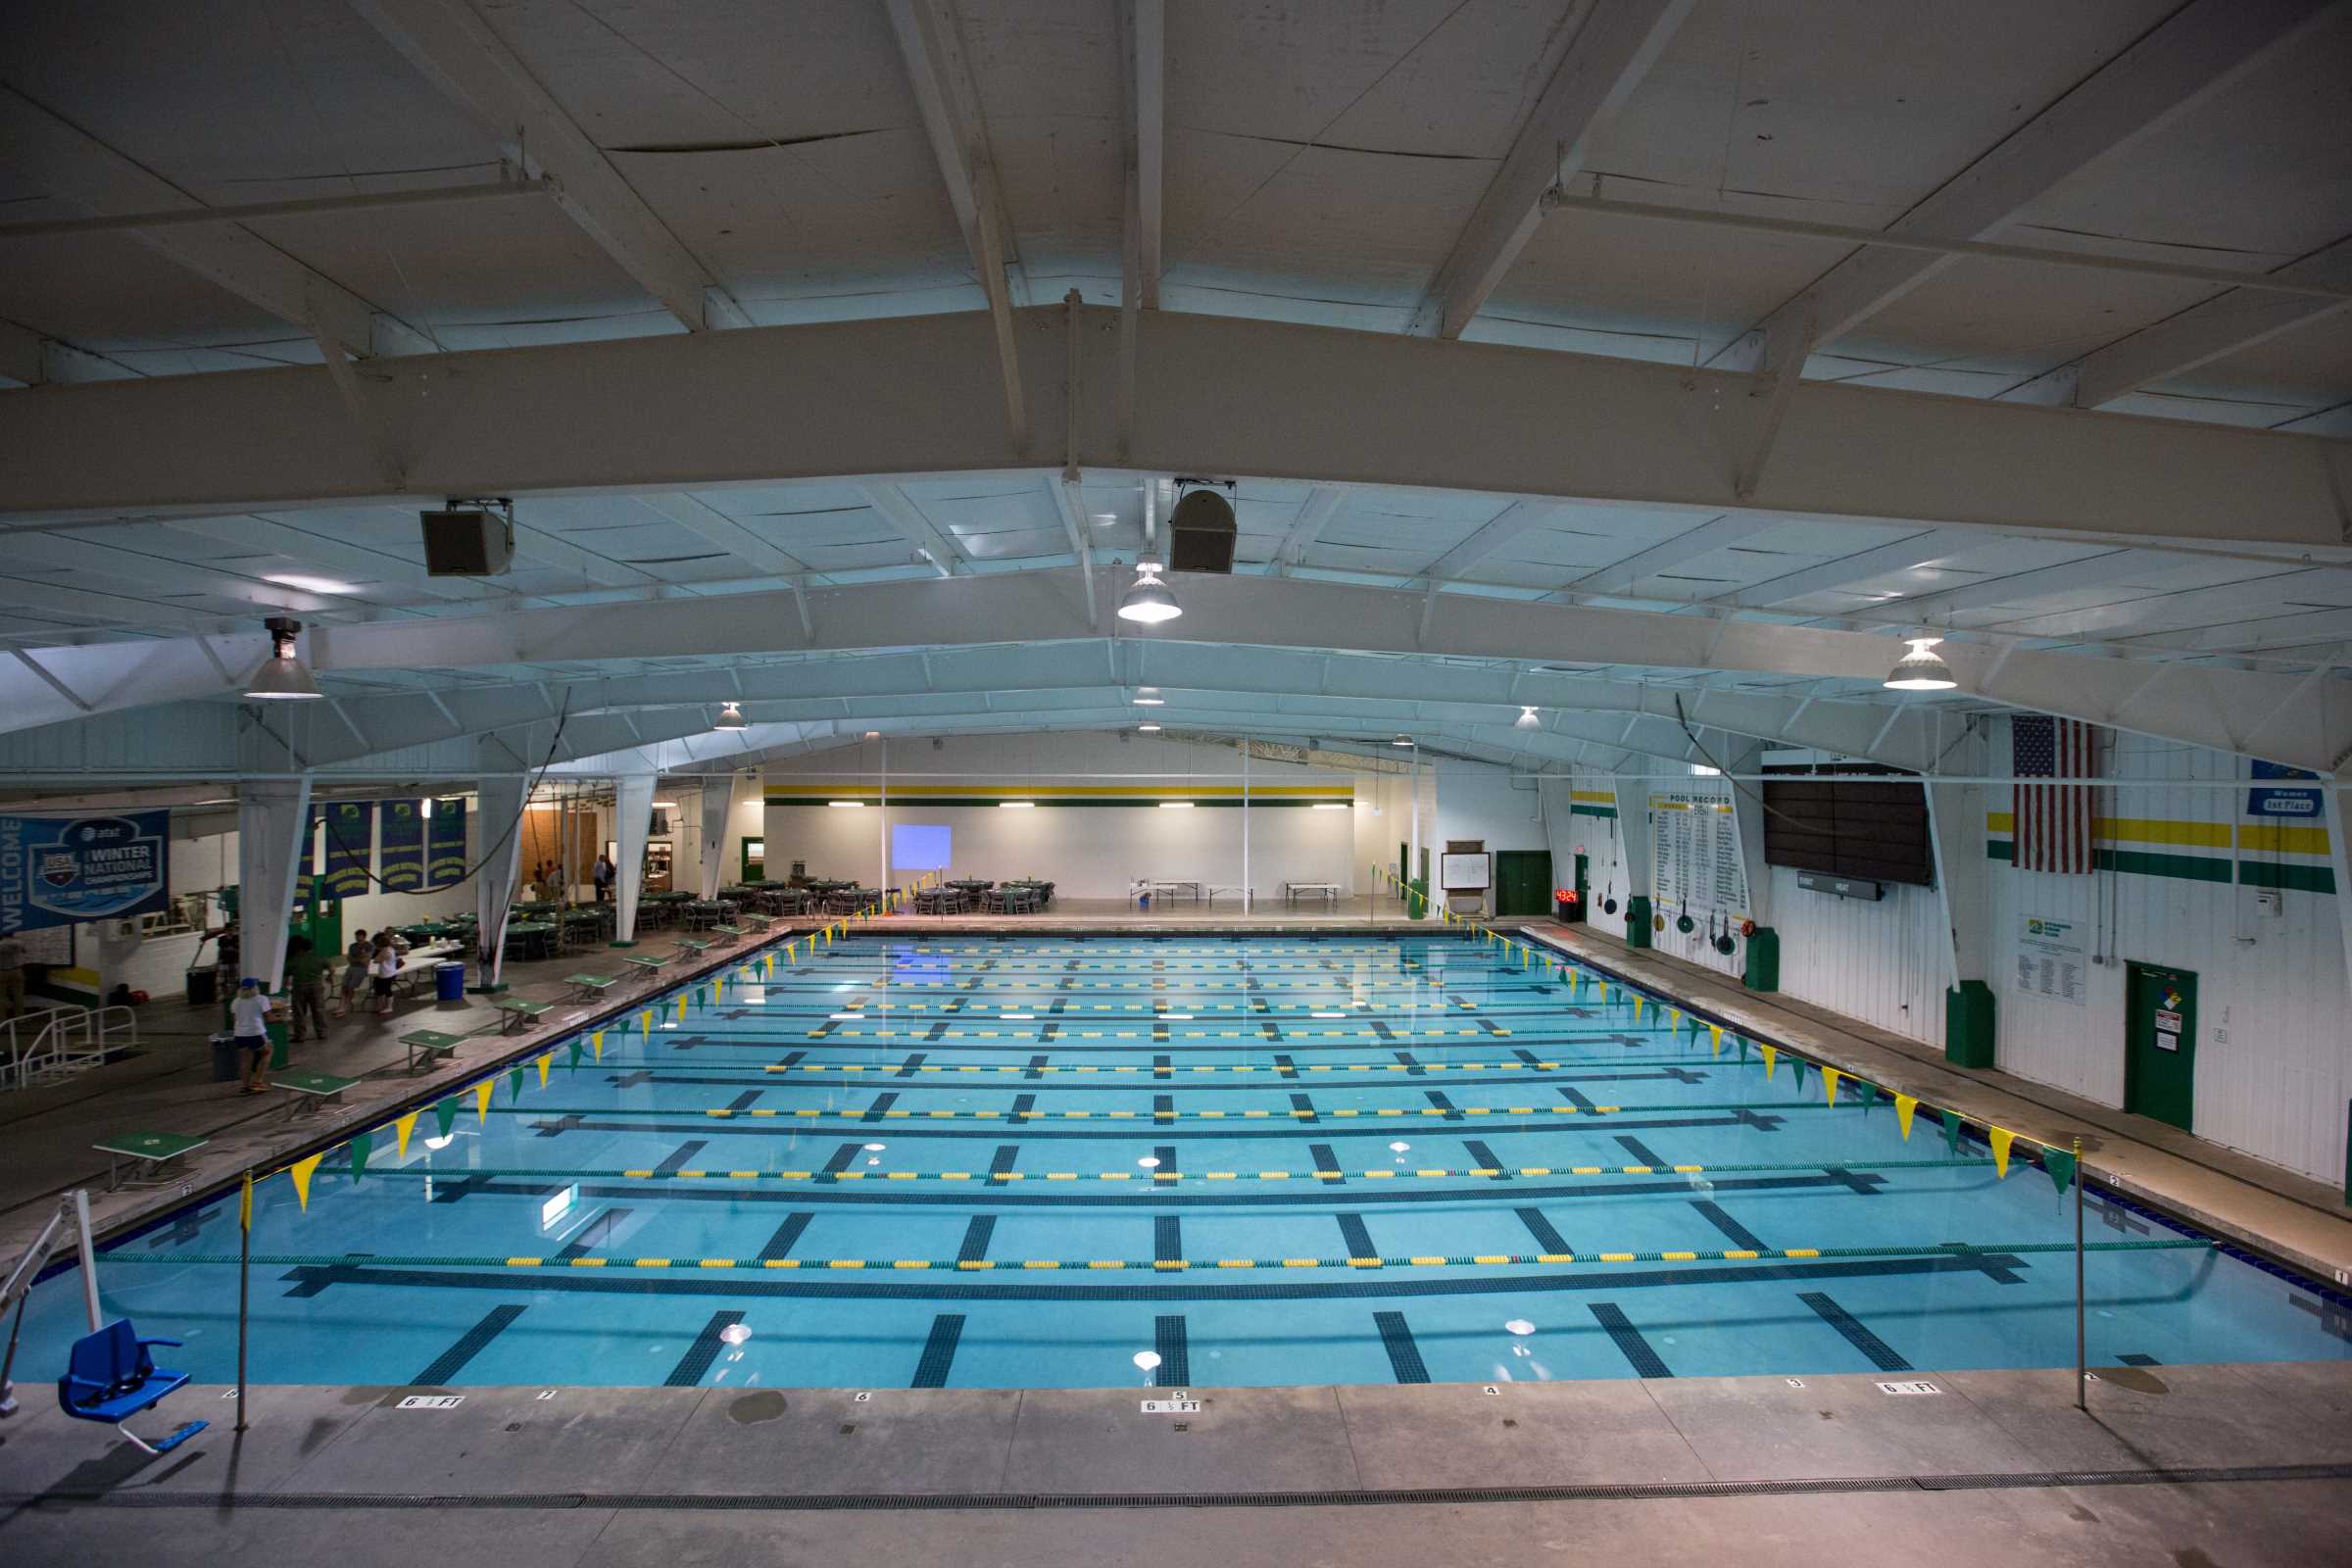 The Coach Raymond Arthur Bussard Aquatic Center”